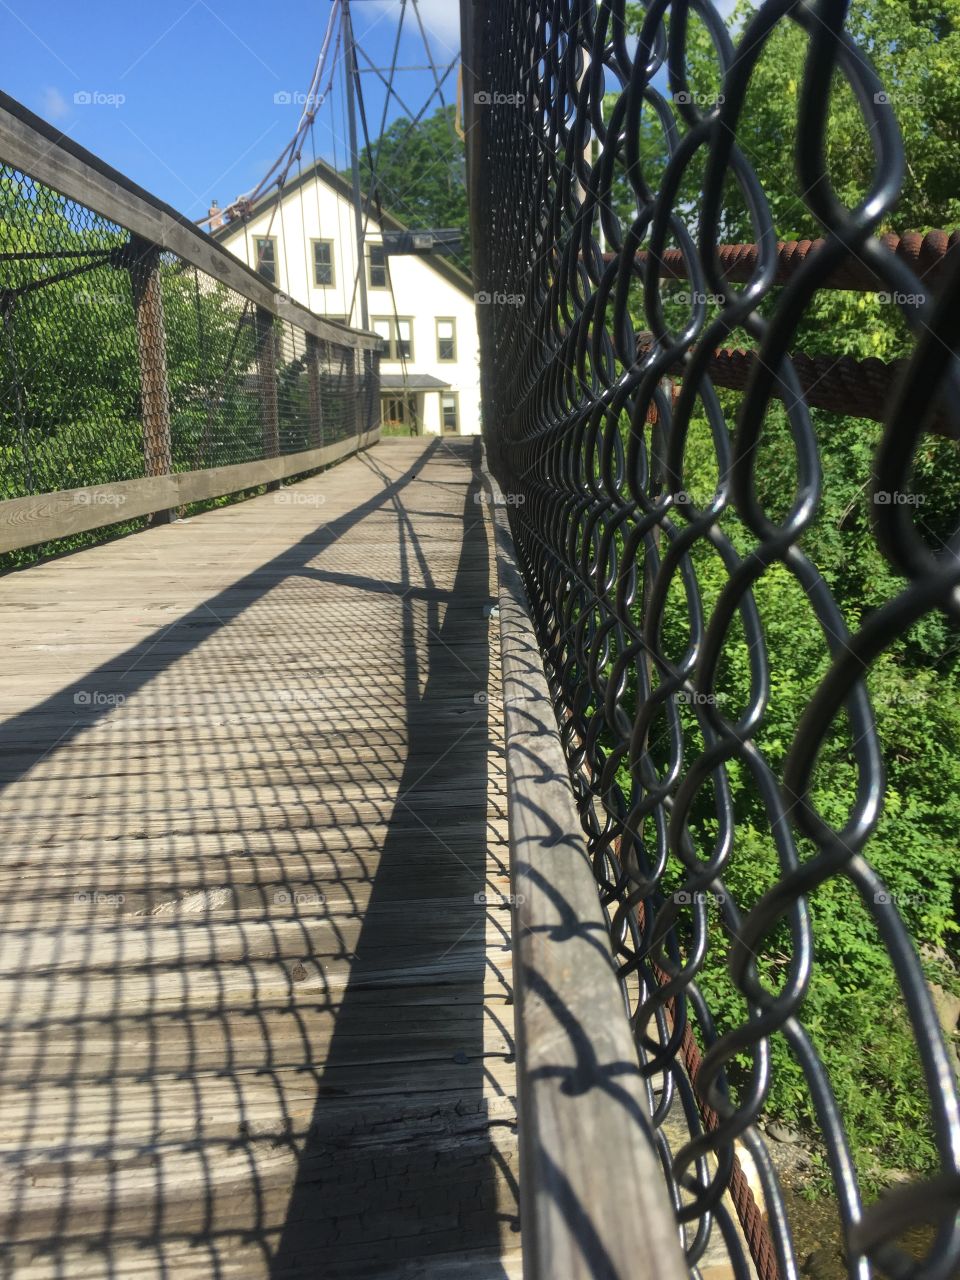 Fence, Iron, Architecture, Wire, Bridge